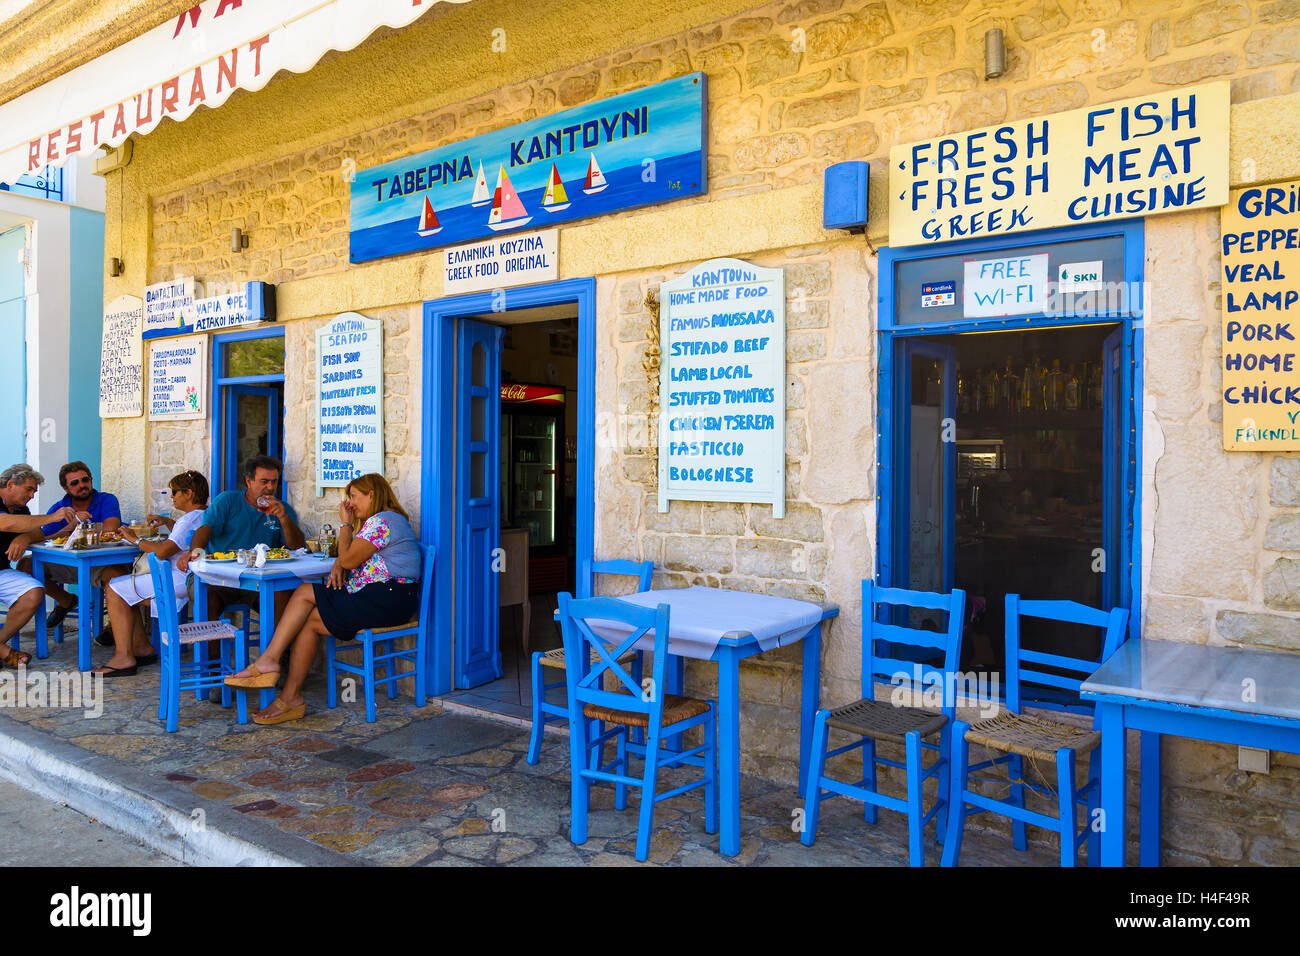 VATHY Stadt, Insel ITHAKA, Griechenland - SEP 17, 2014: Leute sitzen in traditionelles griechisches Restaurant in Küstenstadt Vathy. Griechenland ist bekannt für gutes Essen in Tavernen serviert. Stockfoto